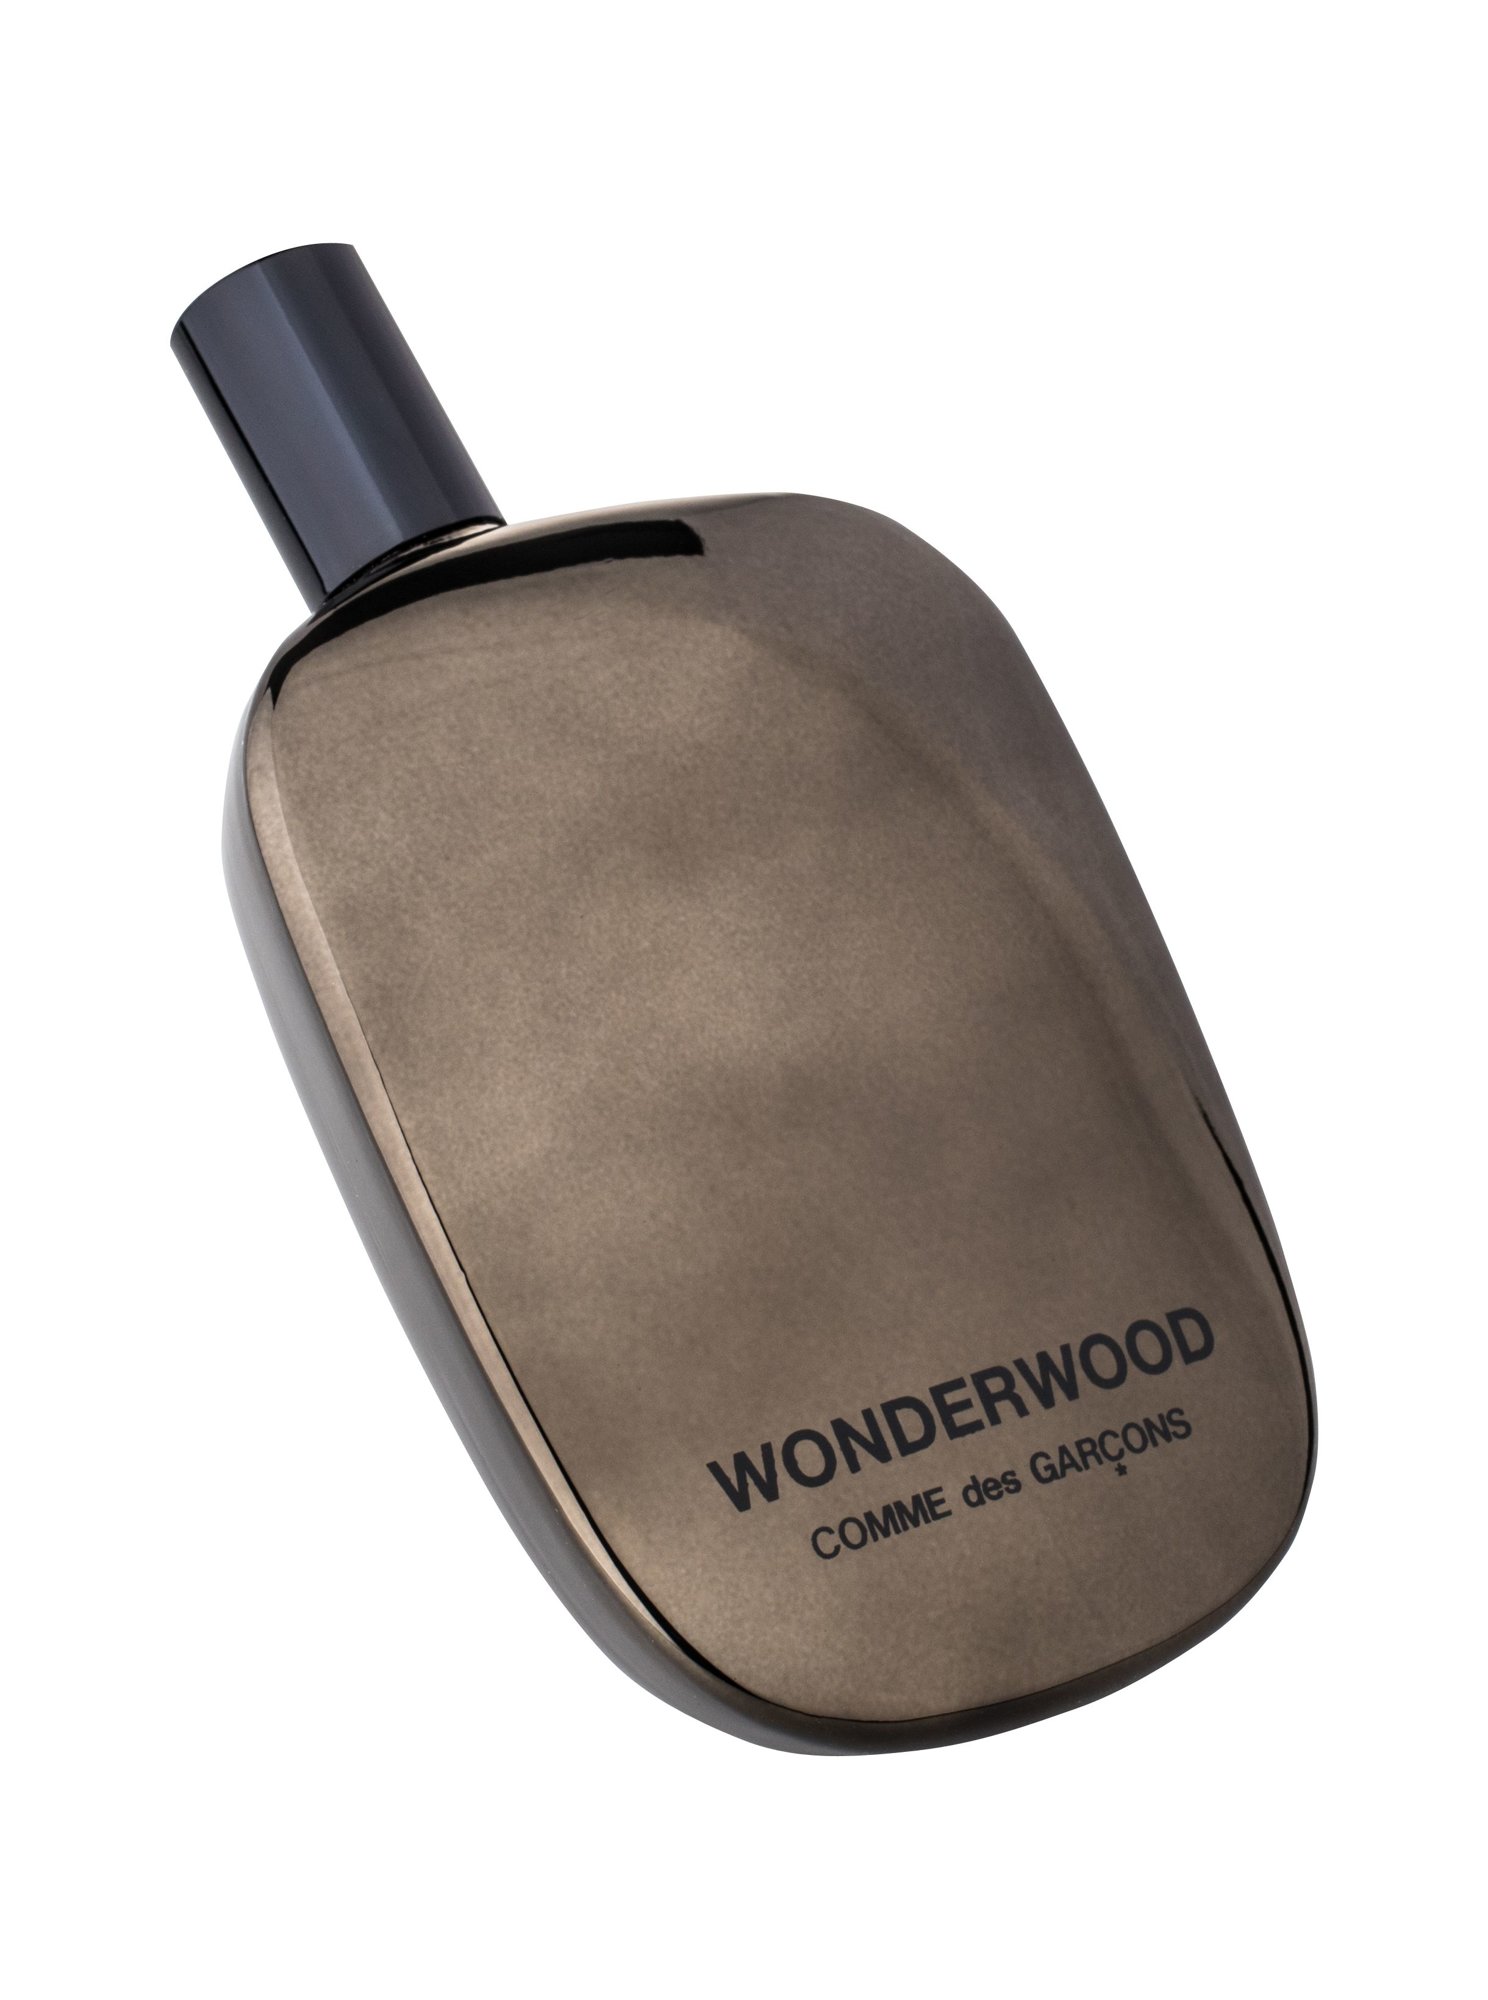 COMME des GARCONS Wonderwood 10 ml NIŠINIAI kvepalų mėginukas (atomaizeris) Vyrams EDP